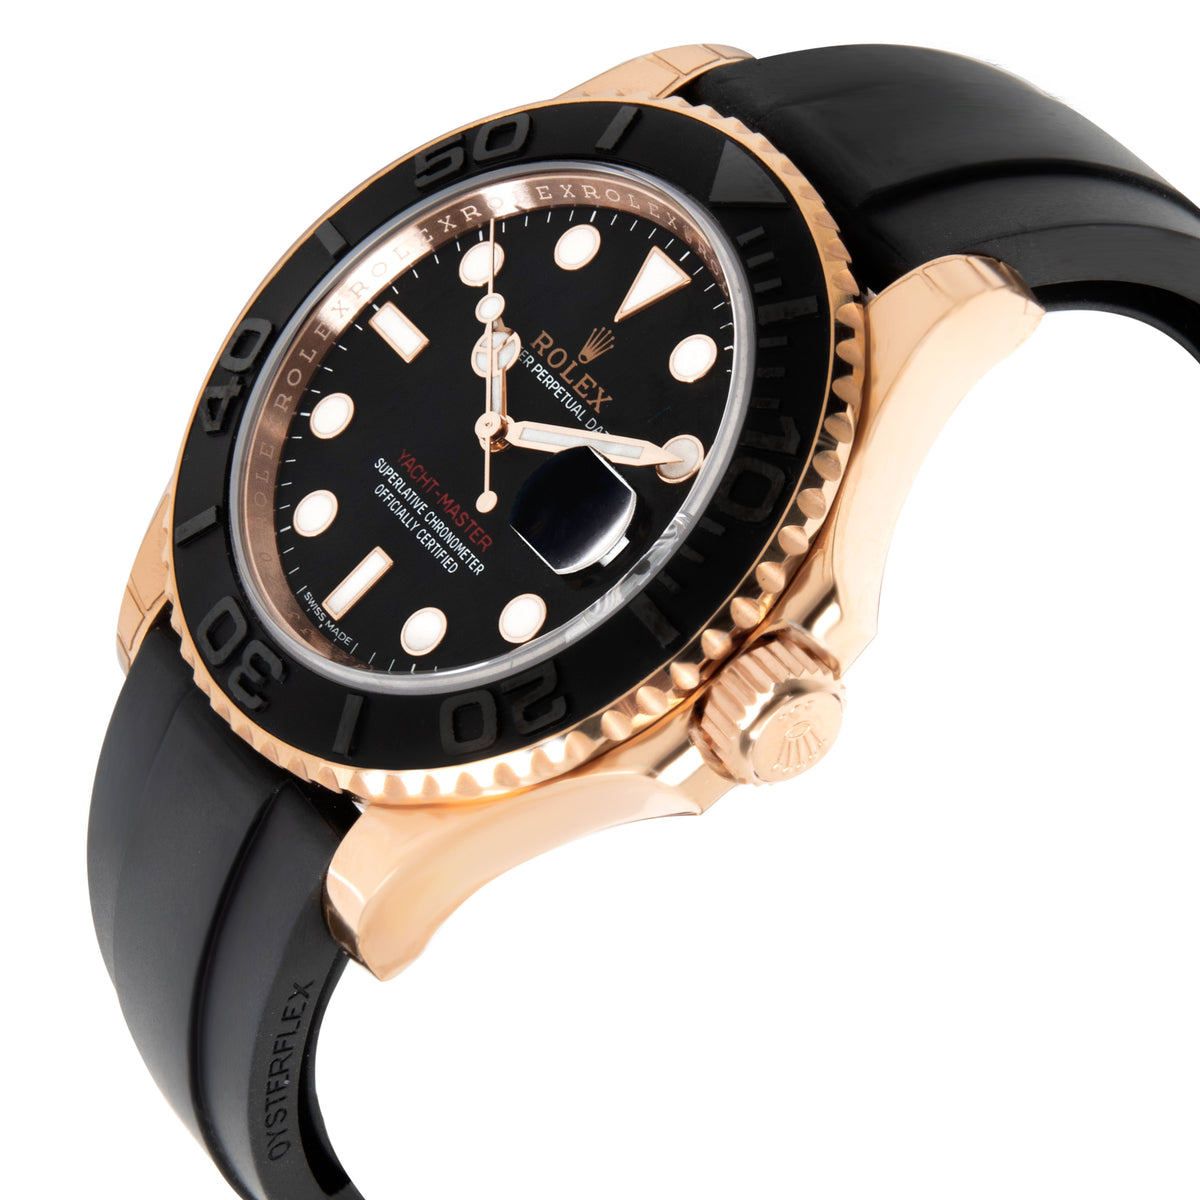 Rolex Yacht-Master 116655 Men's Watch in 18kt Rose Gold